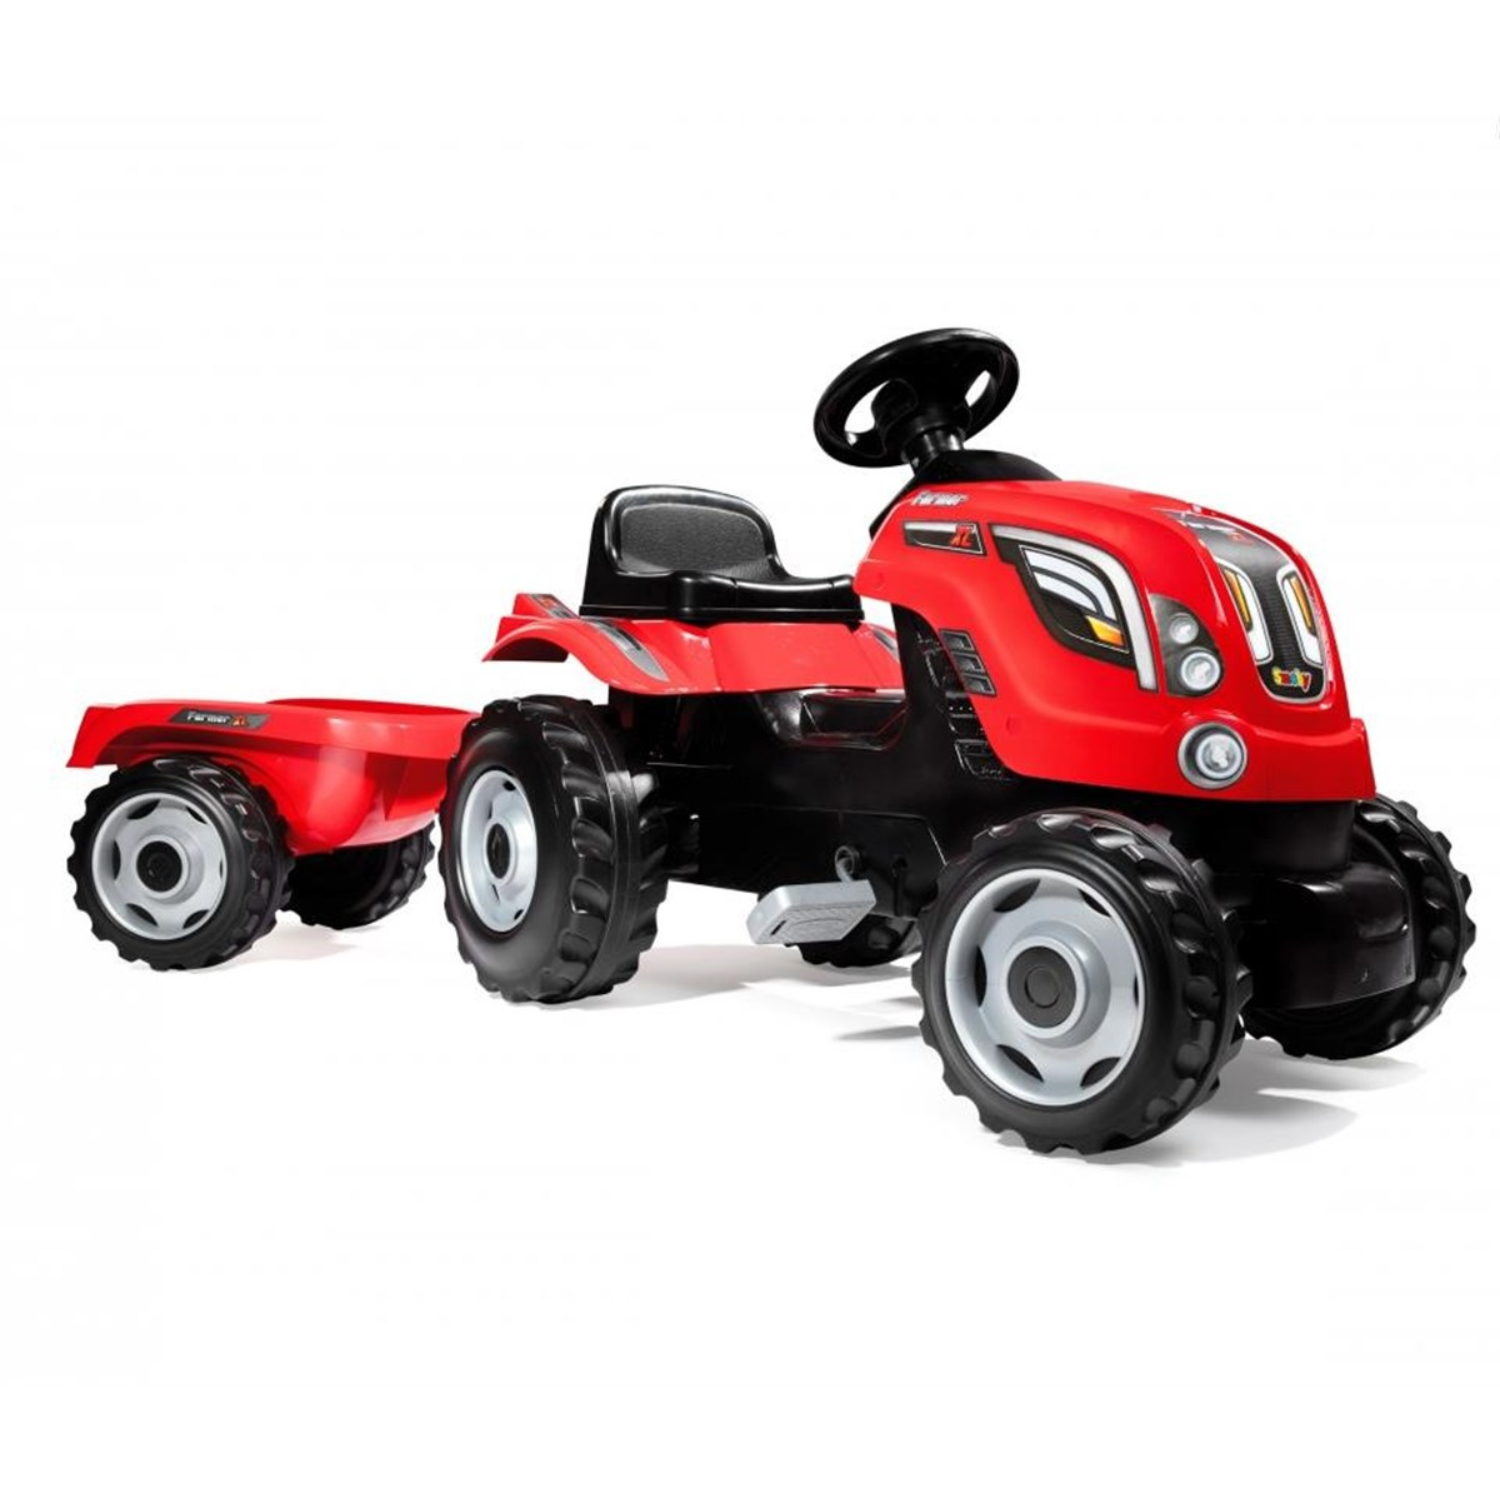 Smoby XL Römorklu Pedallı Traktör - Kırmızı 710108 | Toysall